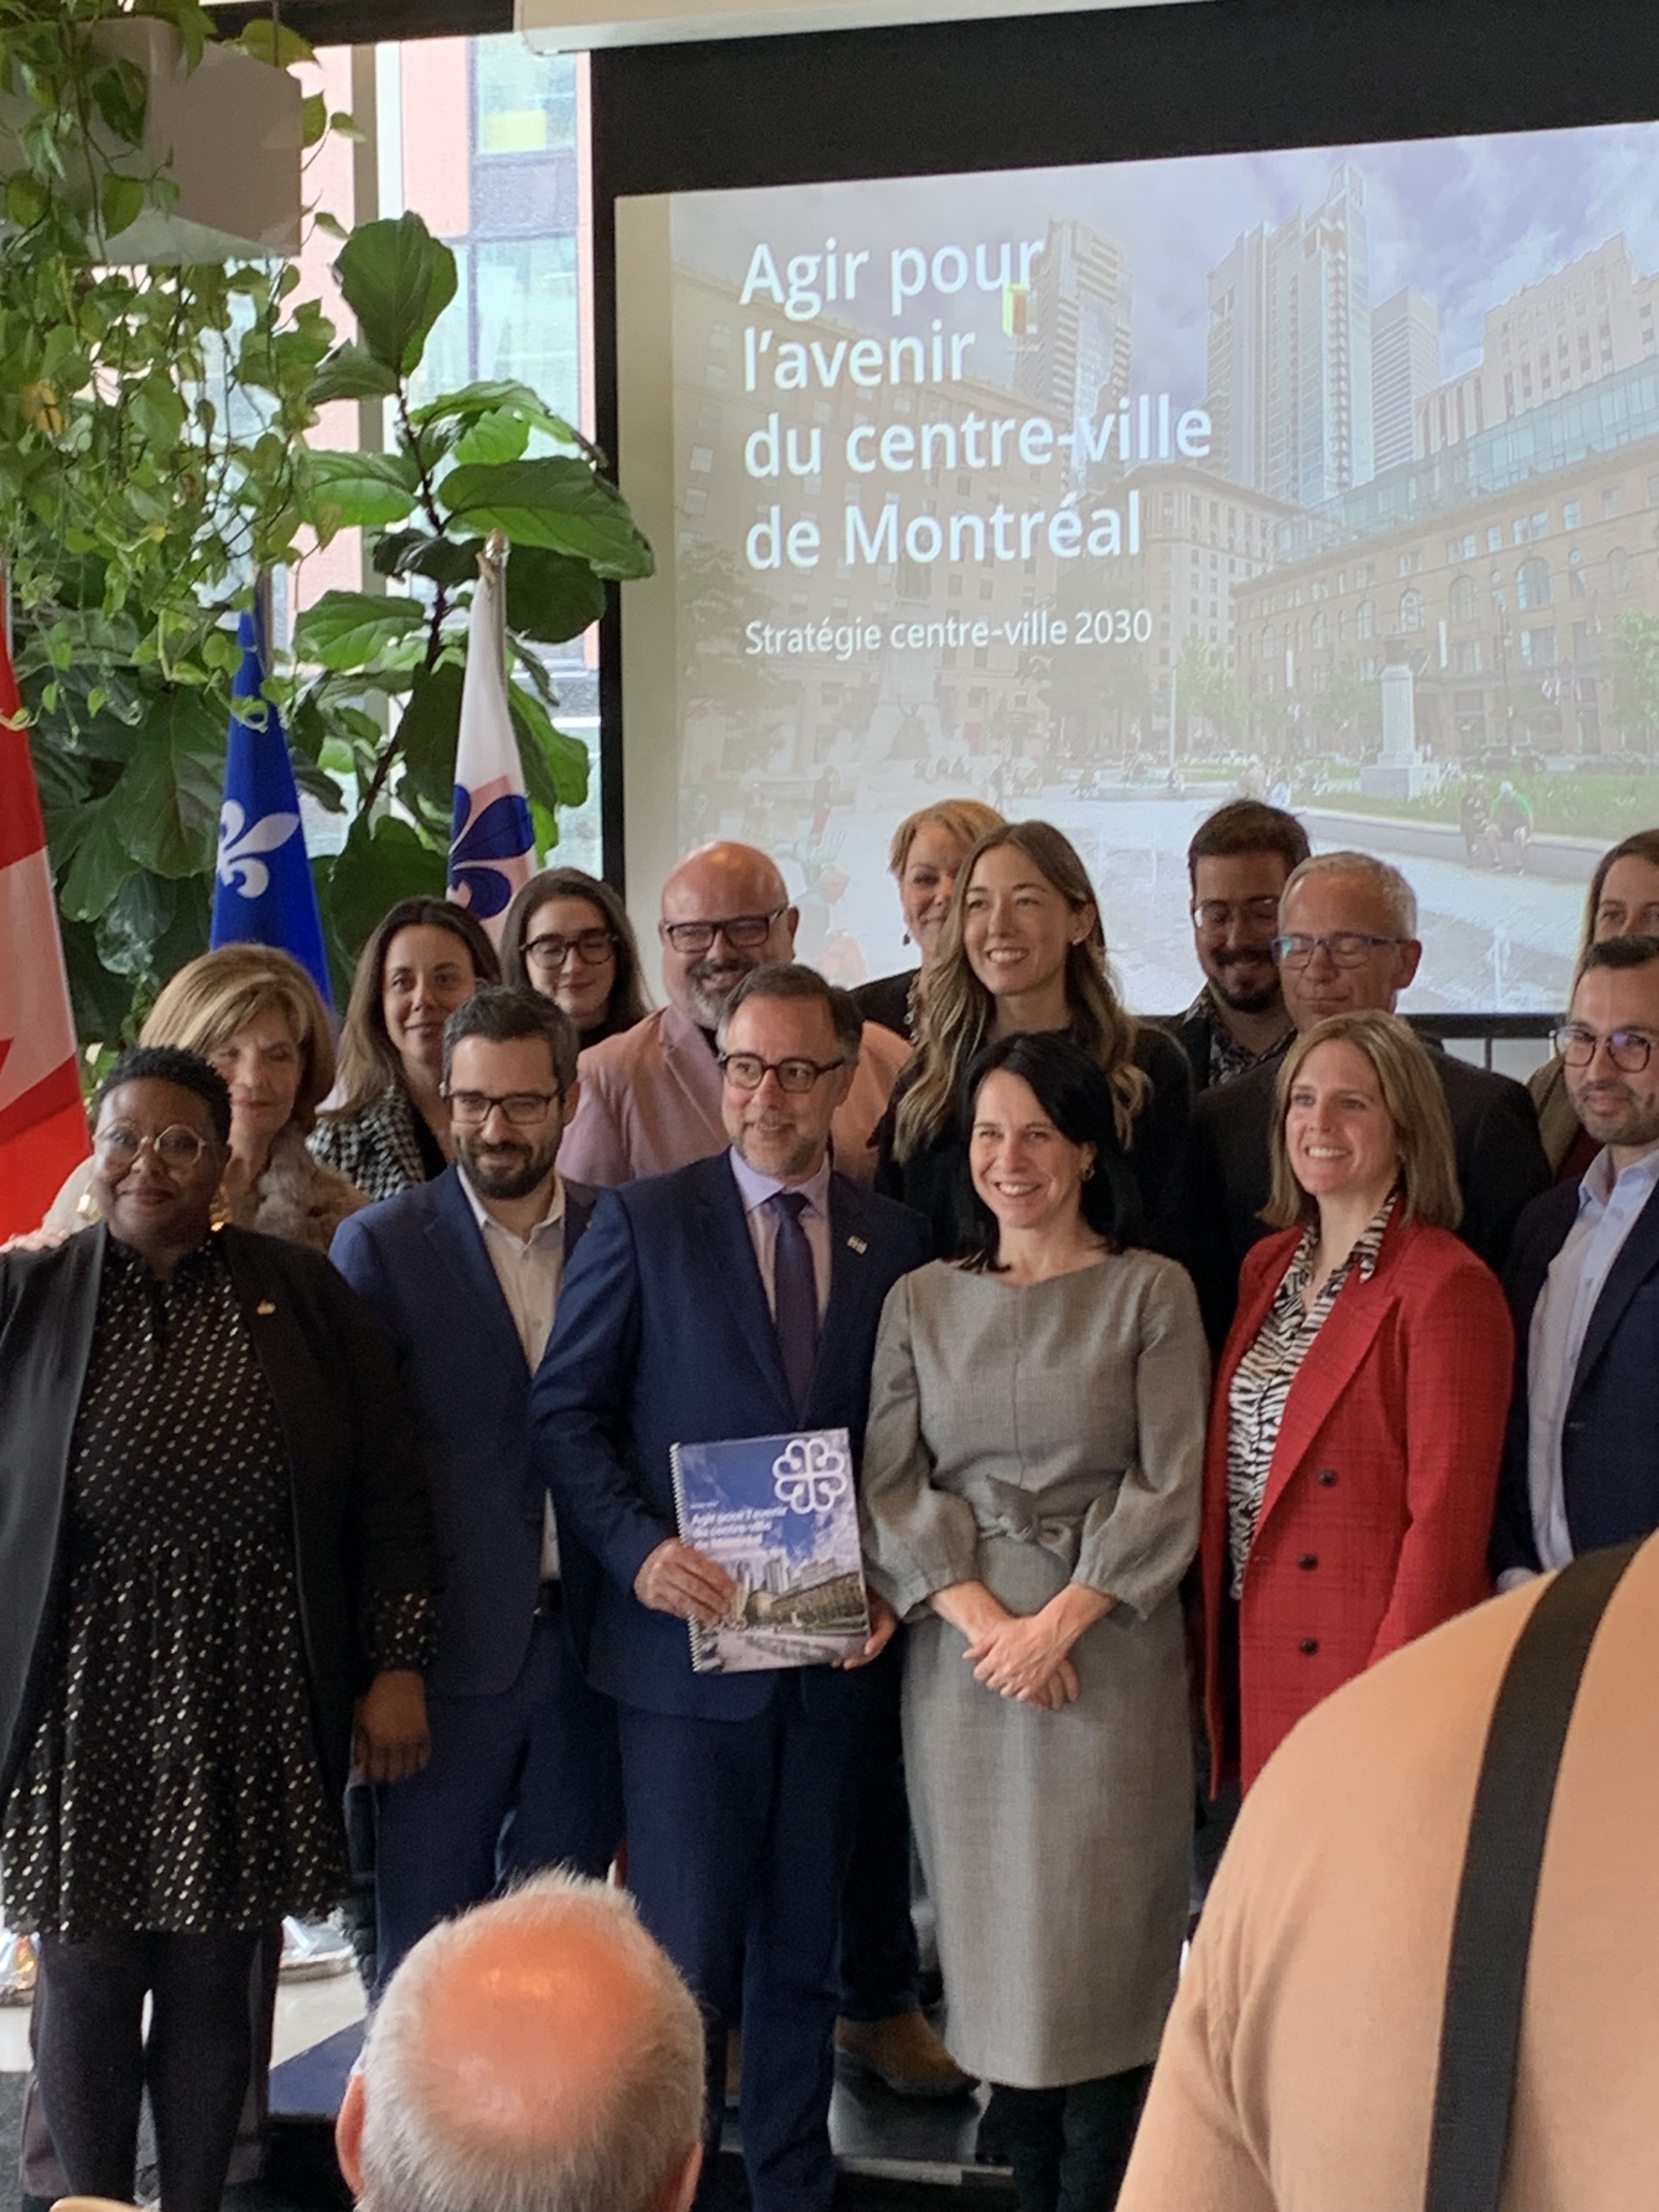 Agir pour l'avenir du centre-ville de la métropole - Montréal dévoile sa vision pour assurer le développement à long terme du centre-ville